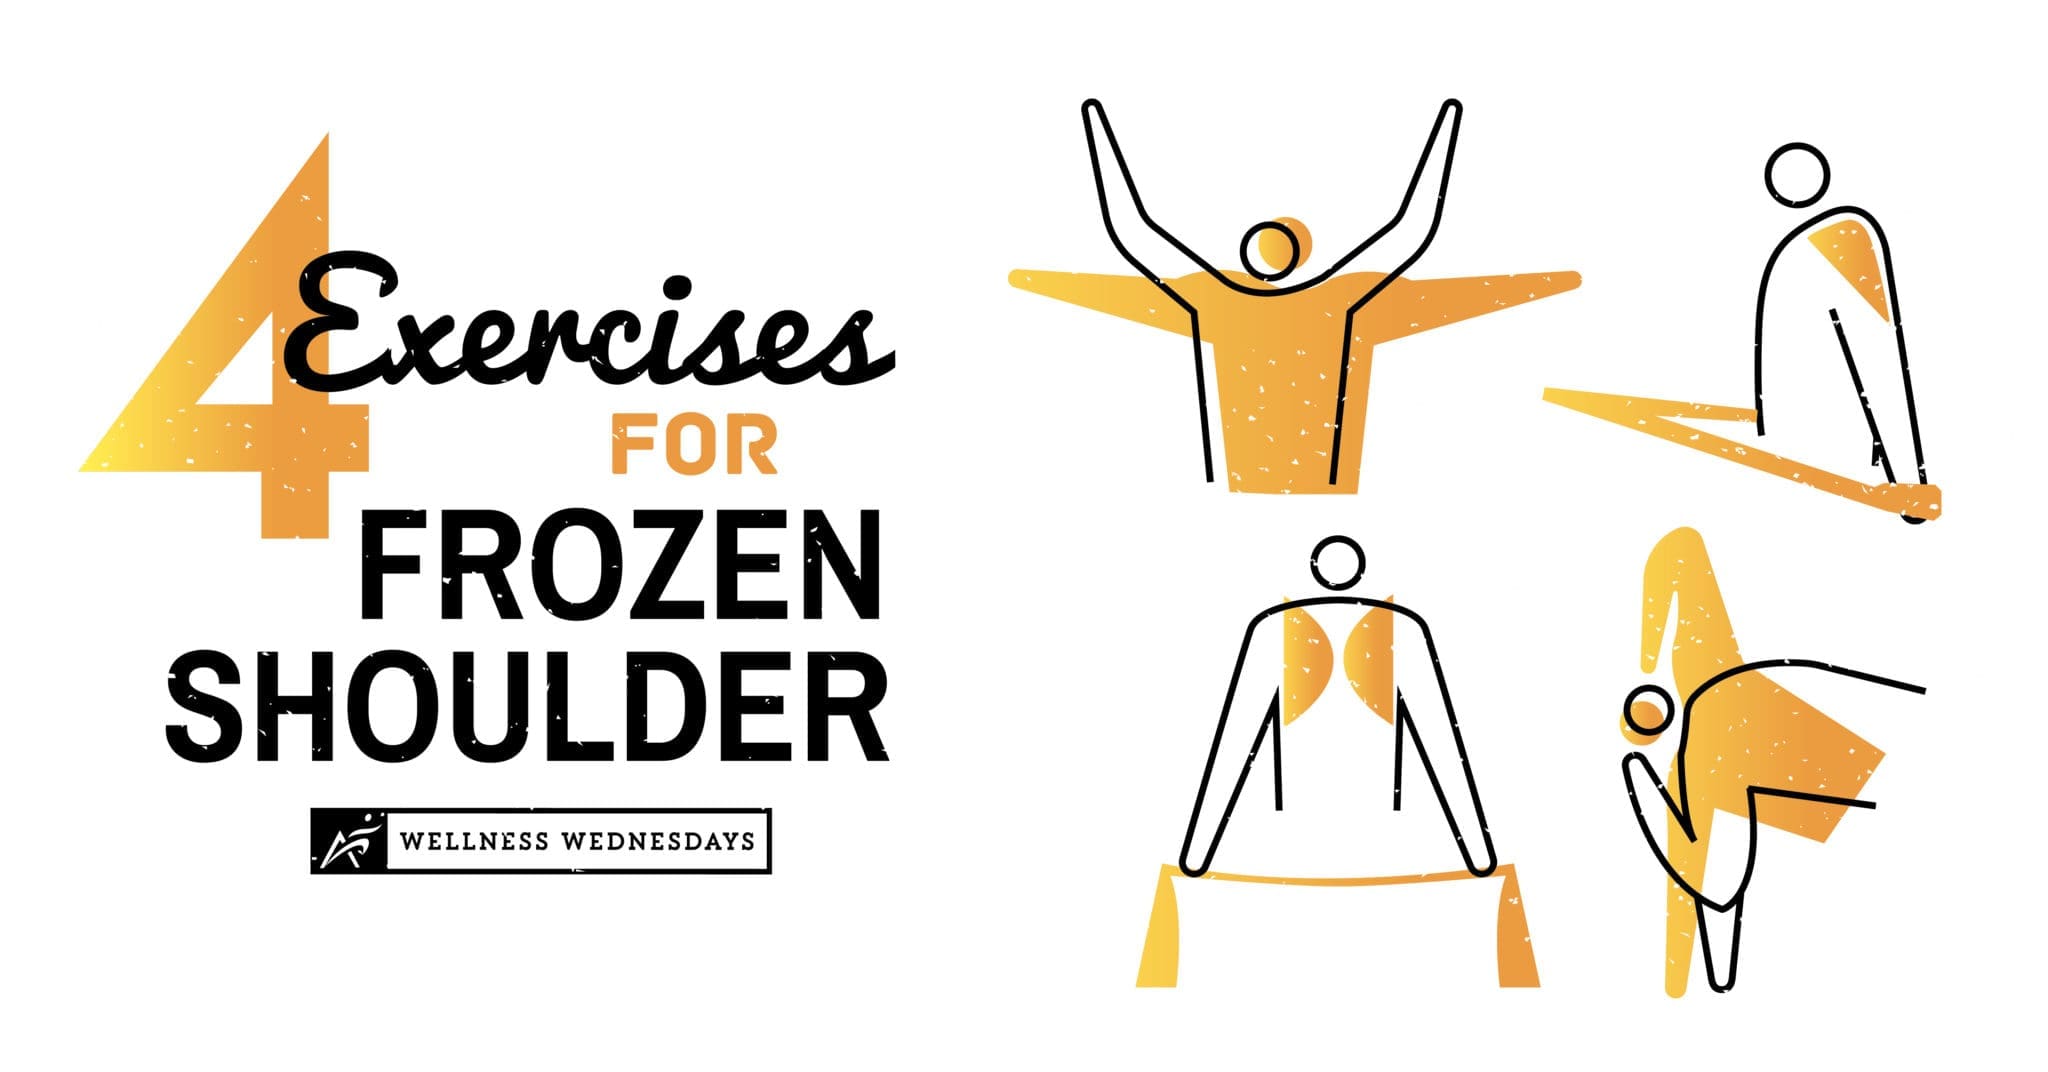 4 Exercises for Frozen Shoulder